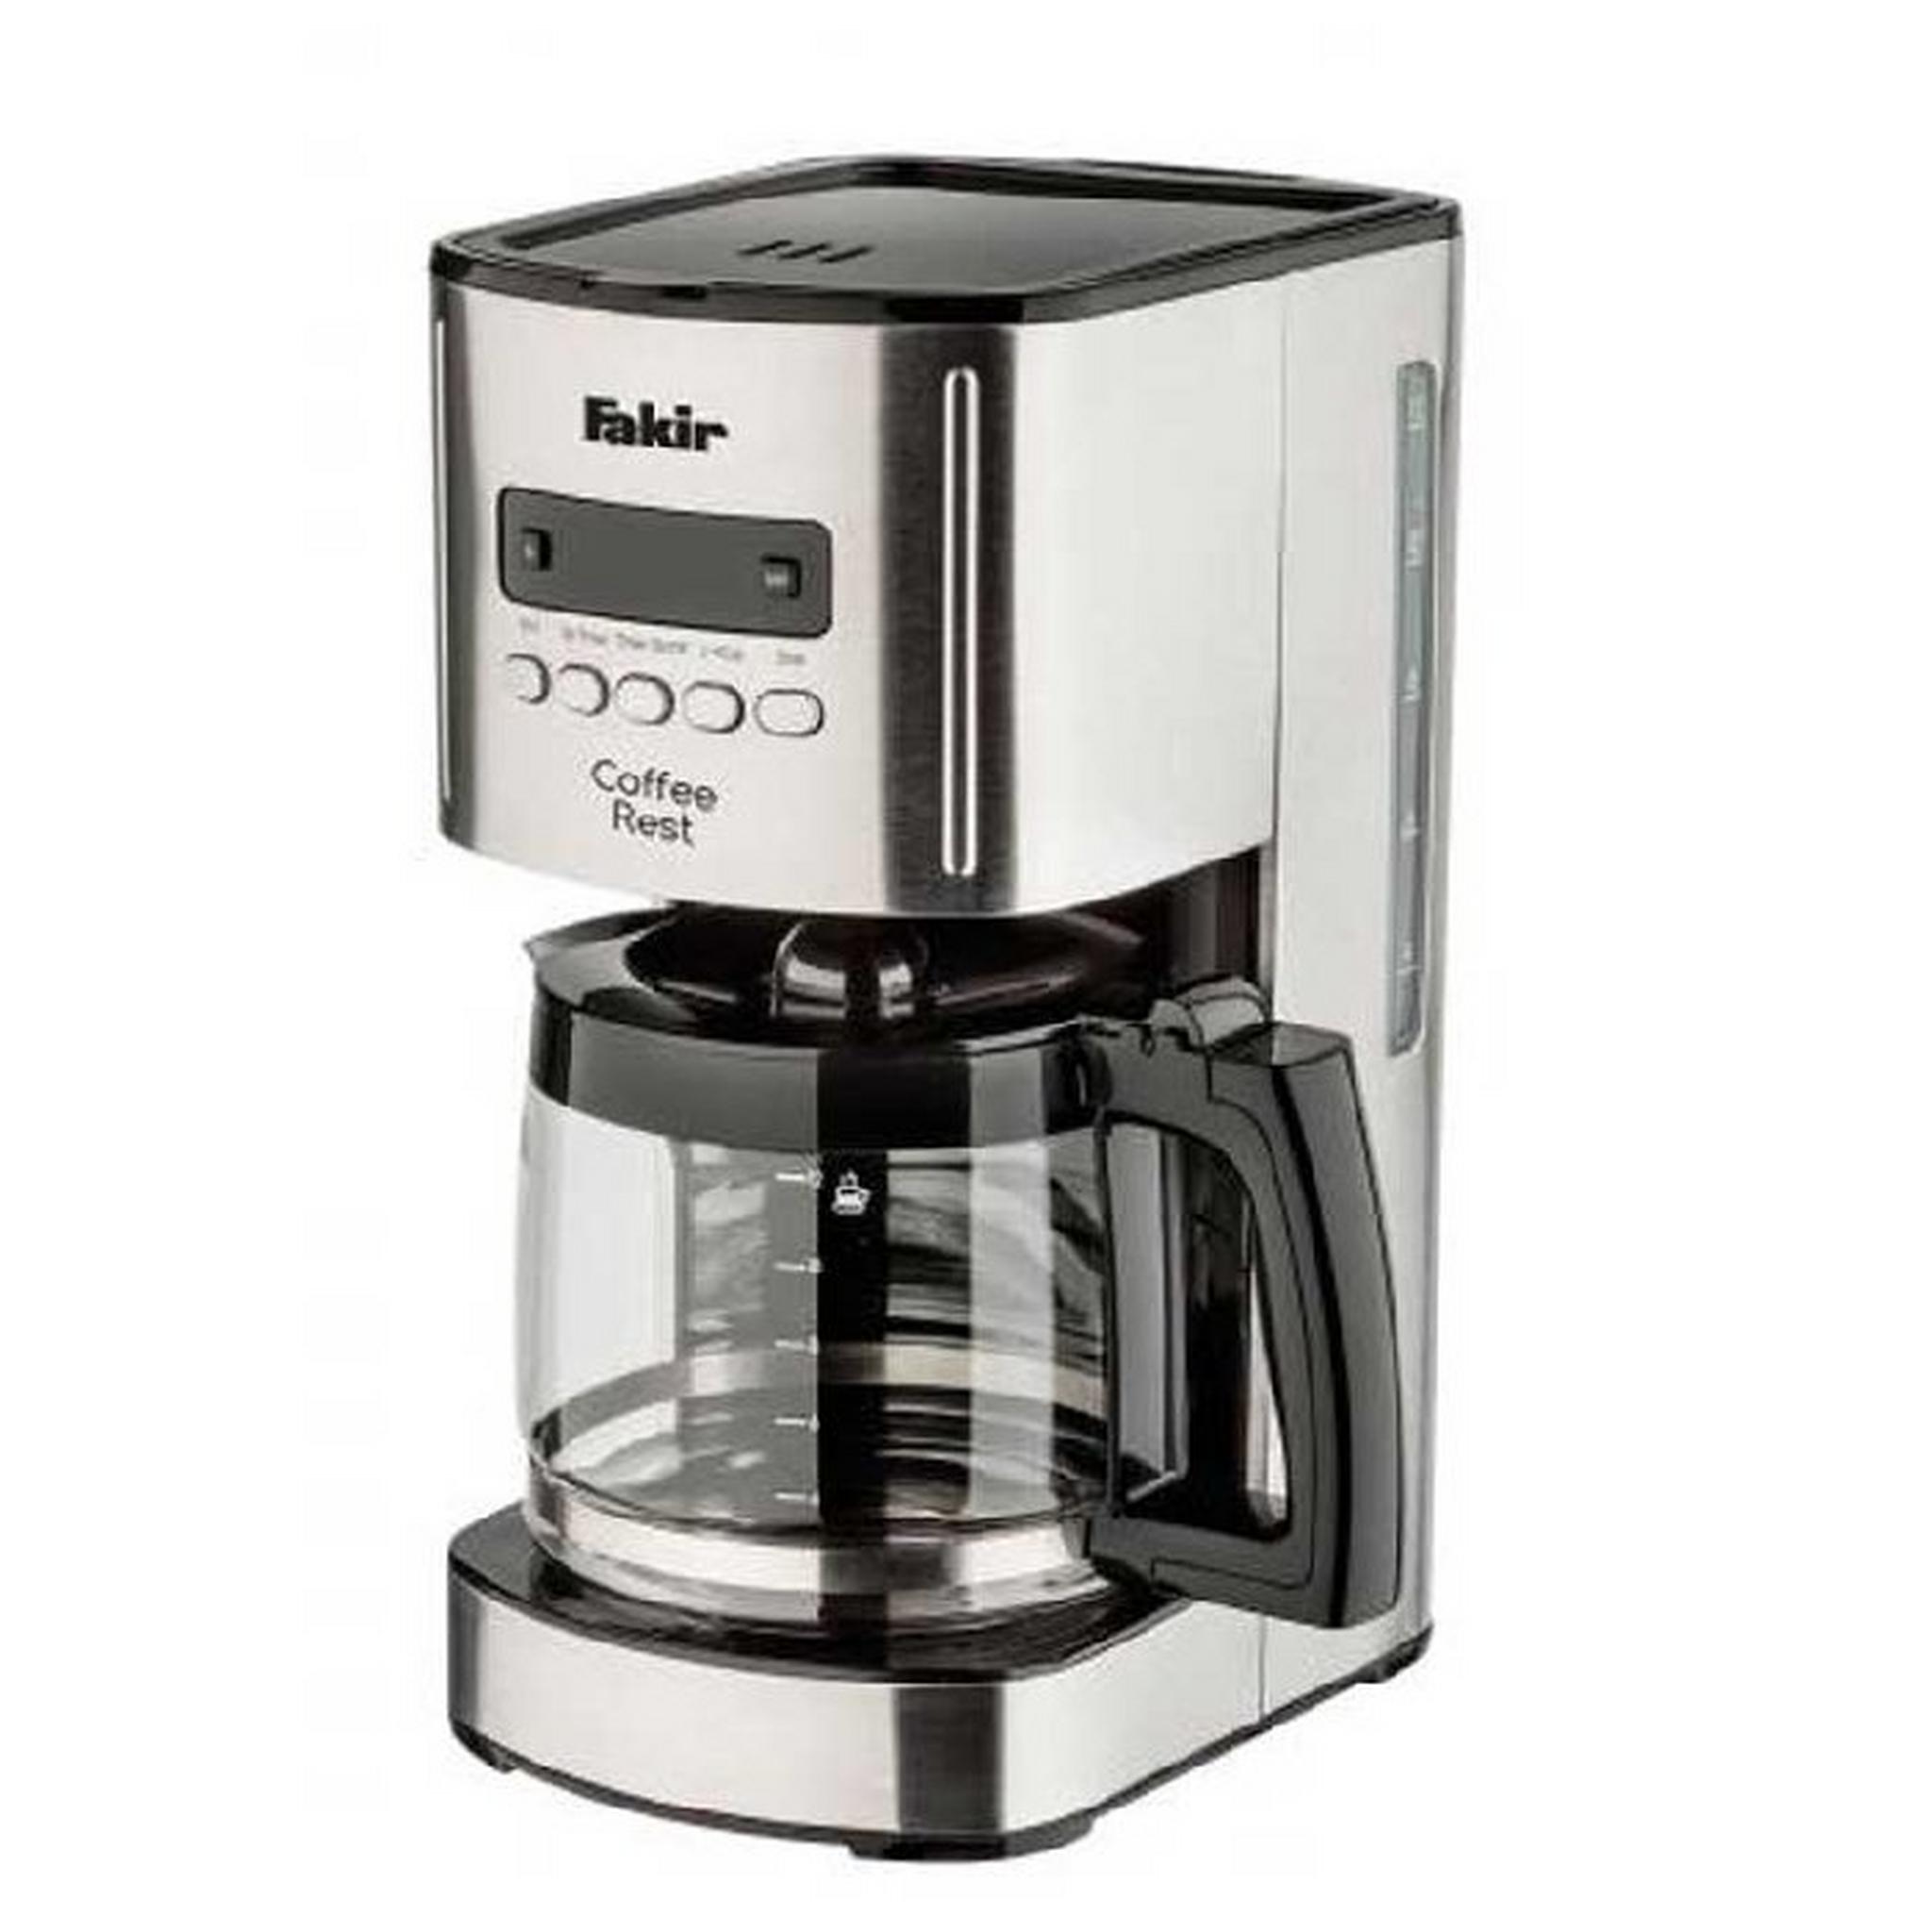 ماكينة قهوة ريست تقطير بسعة 1.25 لتر و يقوة 1000 واط من فاكير (41004263)